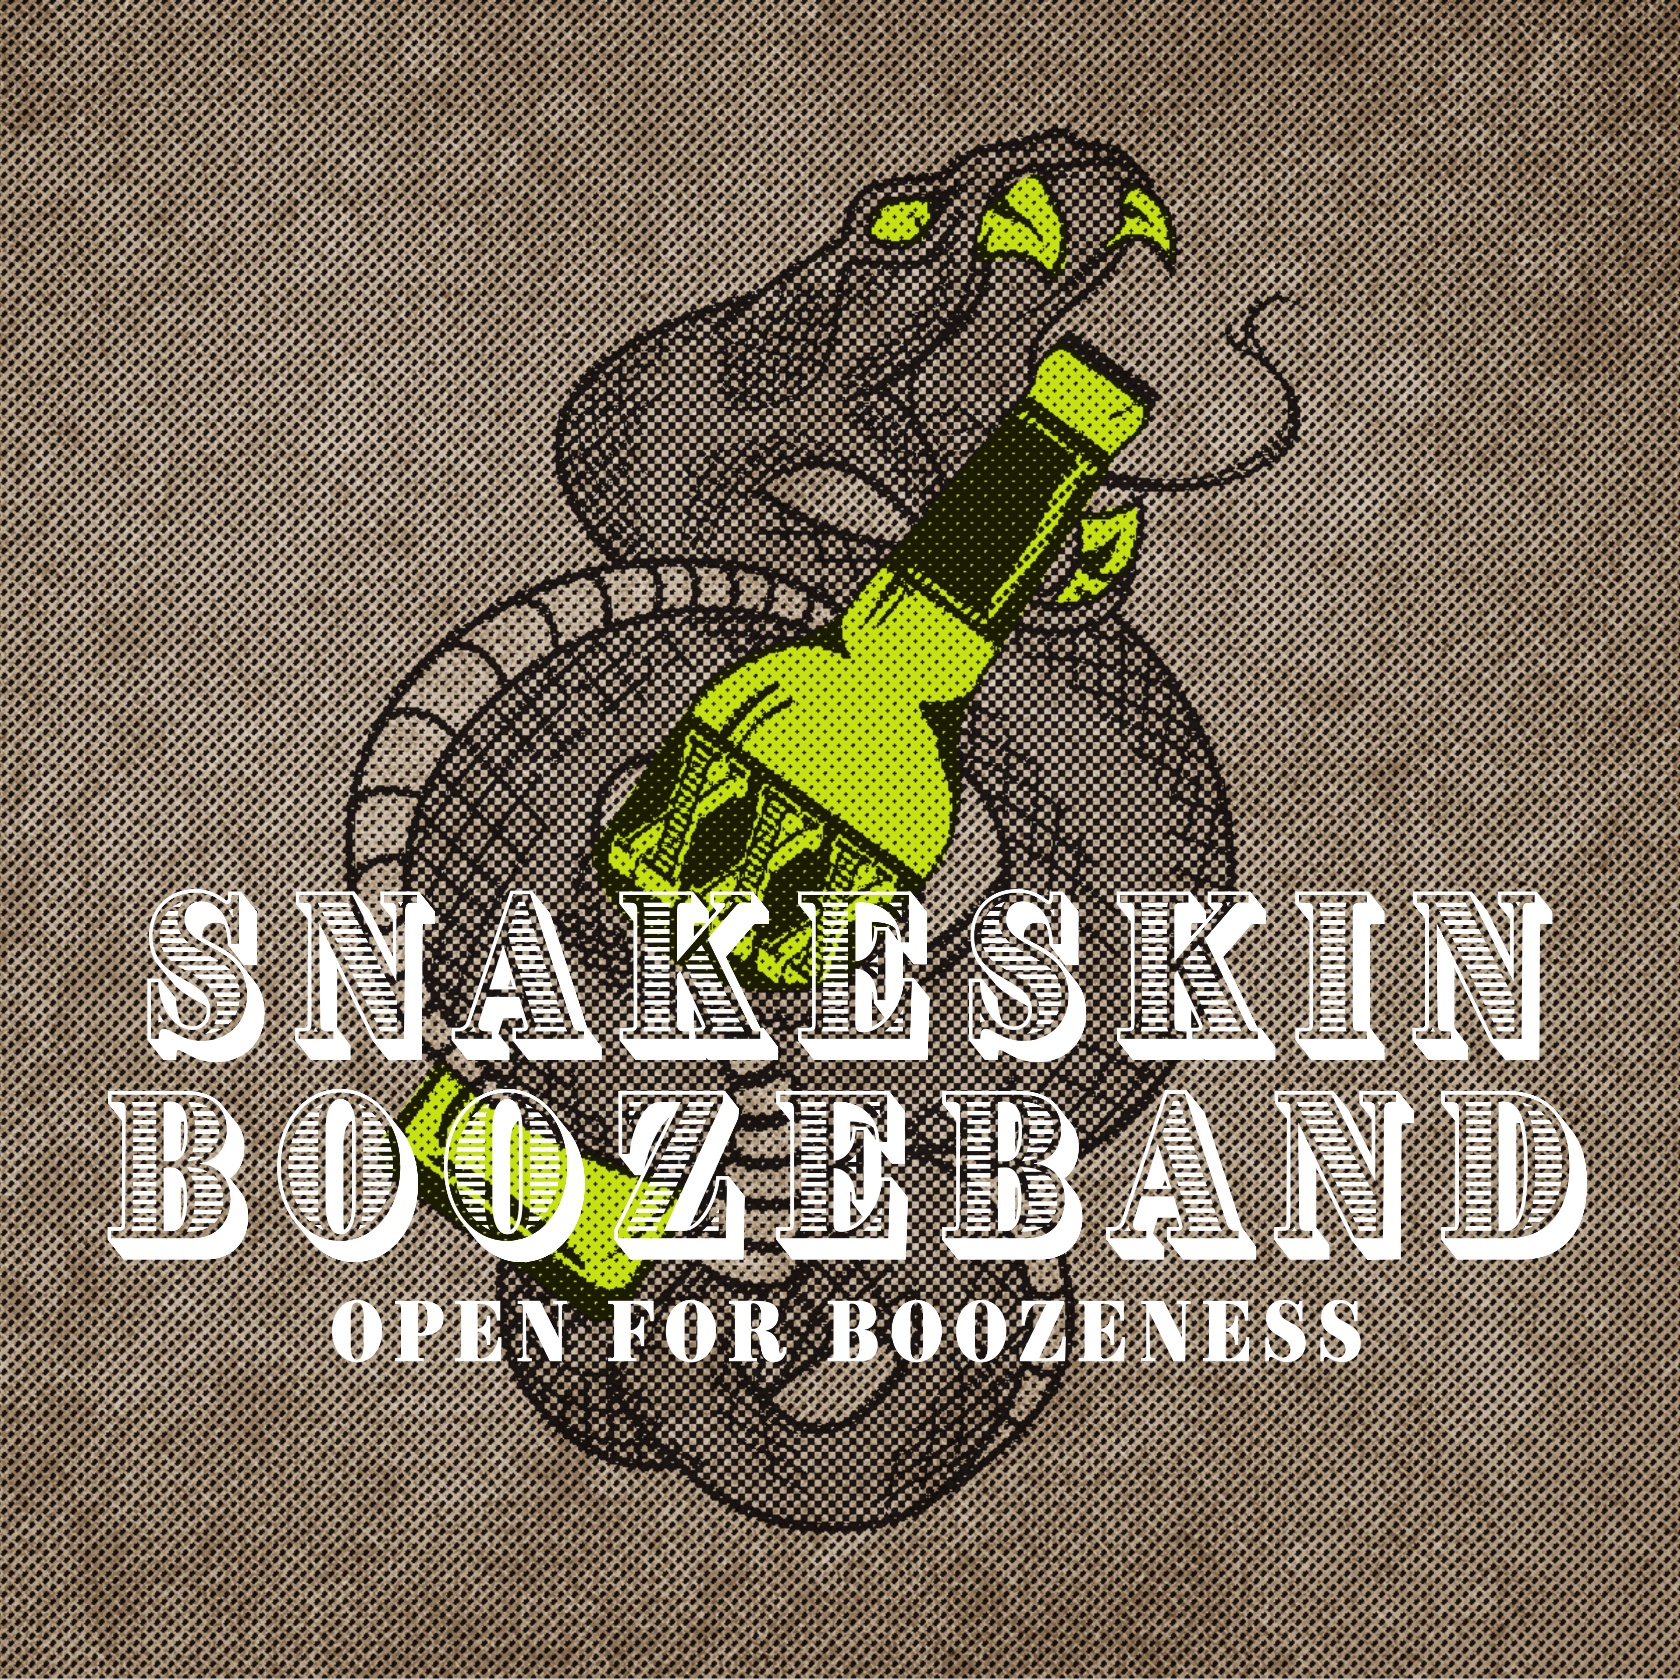 Snakeskin Boozeband © Open for Boozeness Cover 2021